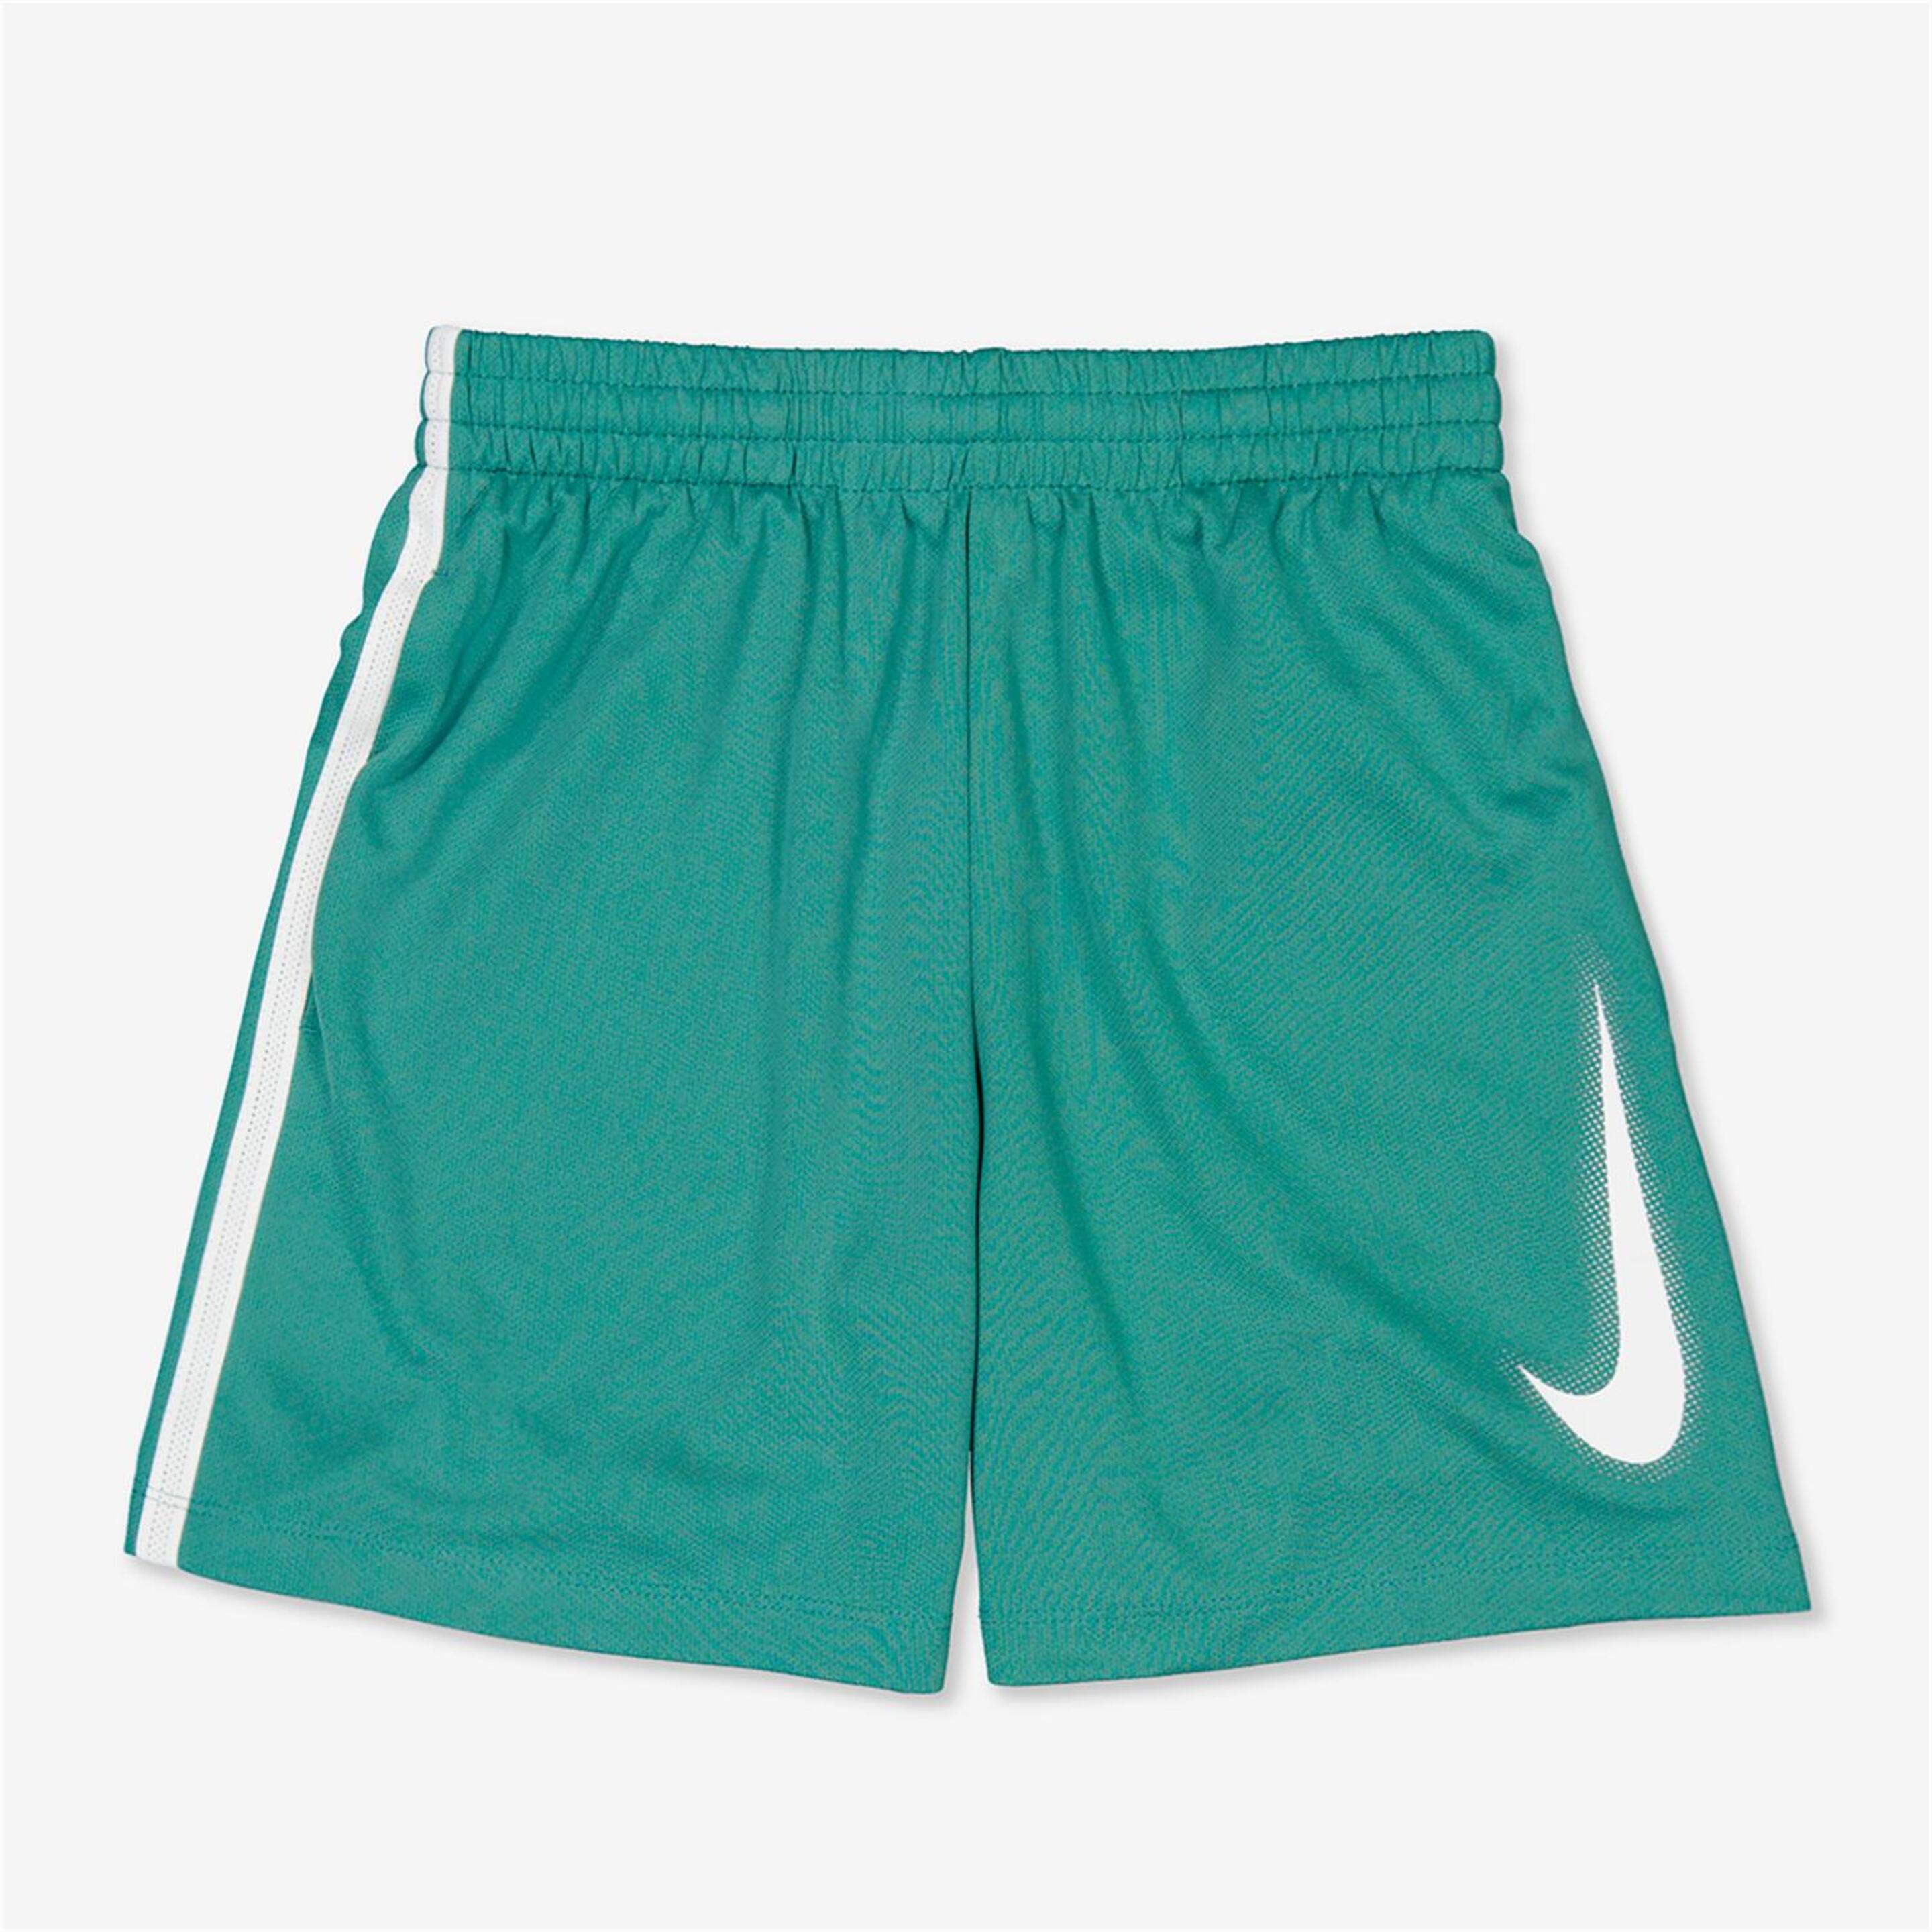 Calções Nike - verde - Bermuda Desportiva Rapaz